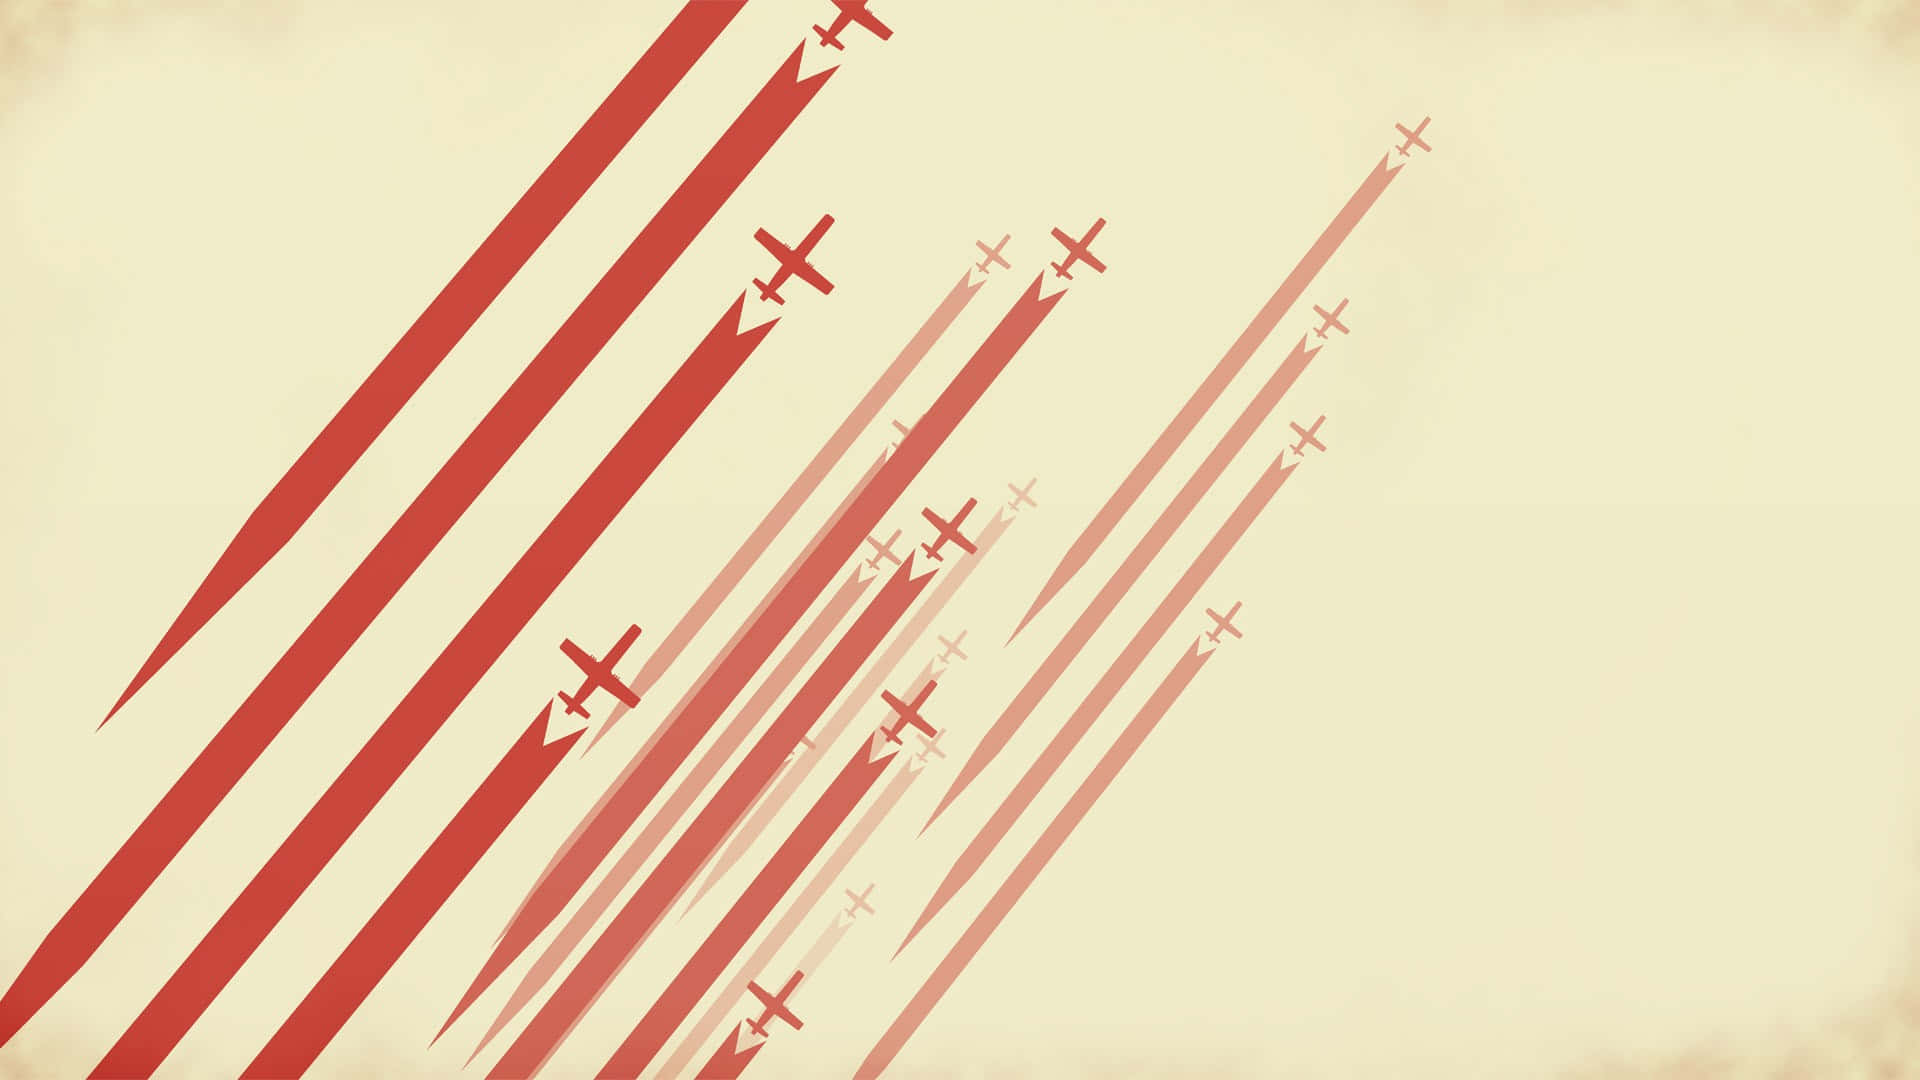 Et rødt og hvidt fly flyvende i himlen. Wallpaper